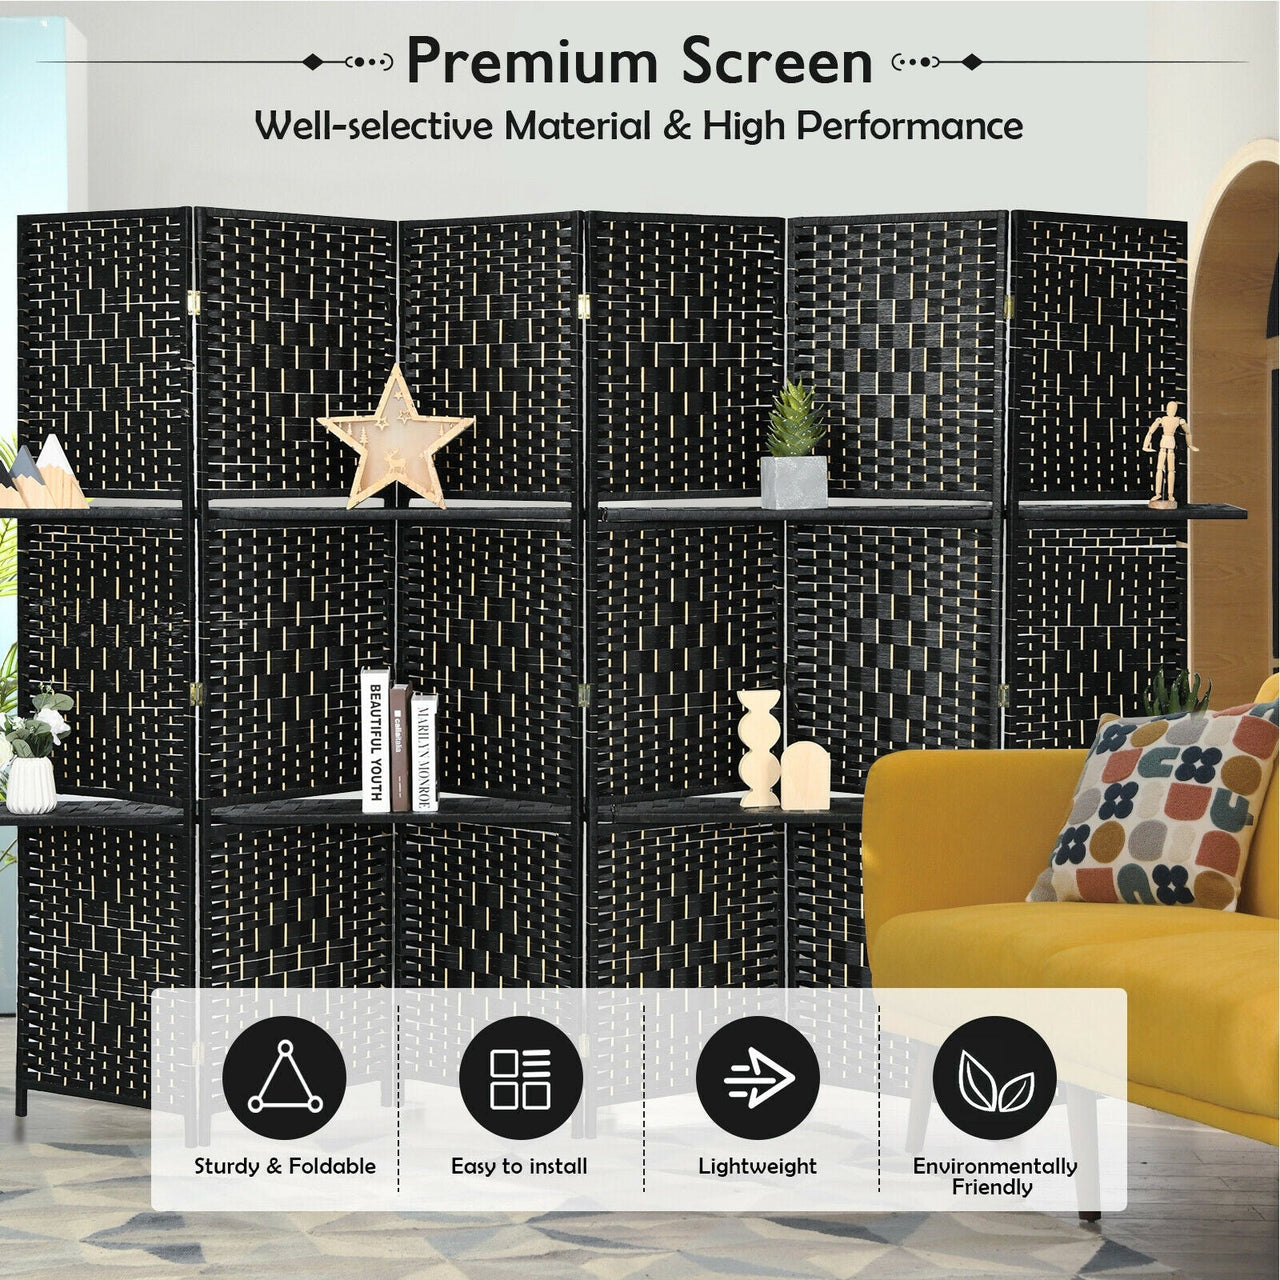 6 Panel Folding Weave Fiber Room Divider with 2 Display Shelves